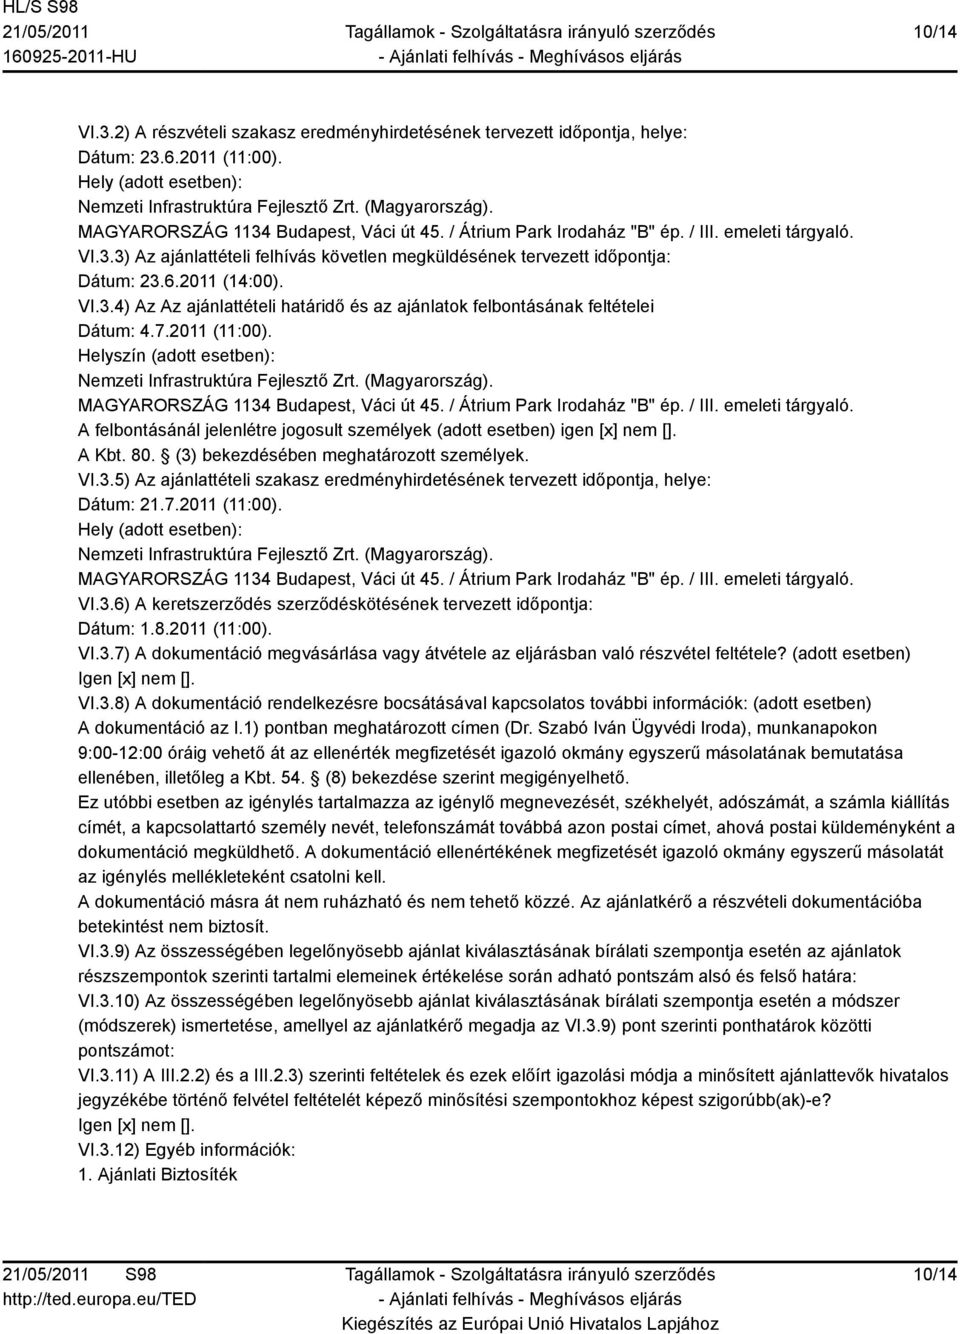 VI.3.4) Az Az ajánlattételi határidő és az ajánlatok felbontásának feltételei Dátum: 4.7.2011 (11:00). Helyszín (adott esetben): zeti Infrastruktúra Fejlesztő Zrt. (Magyarország).